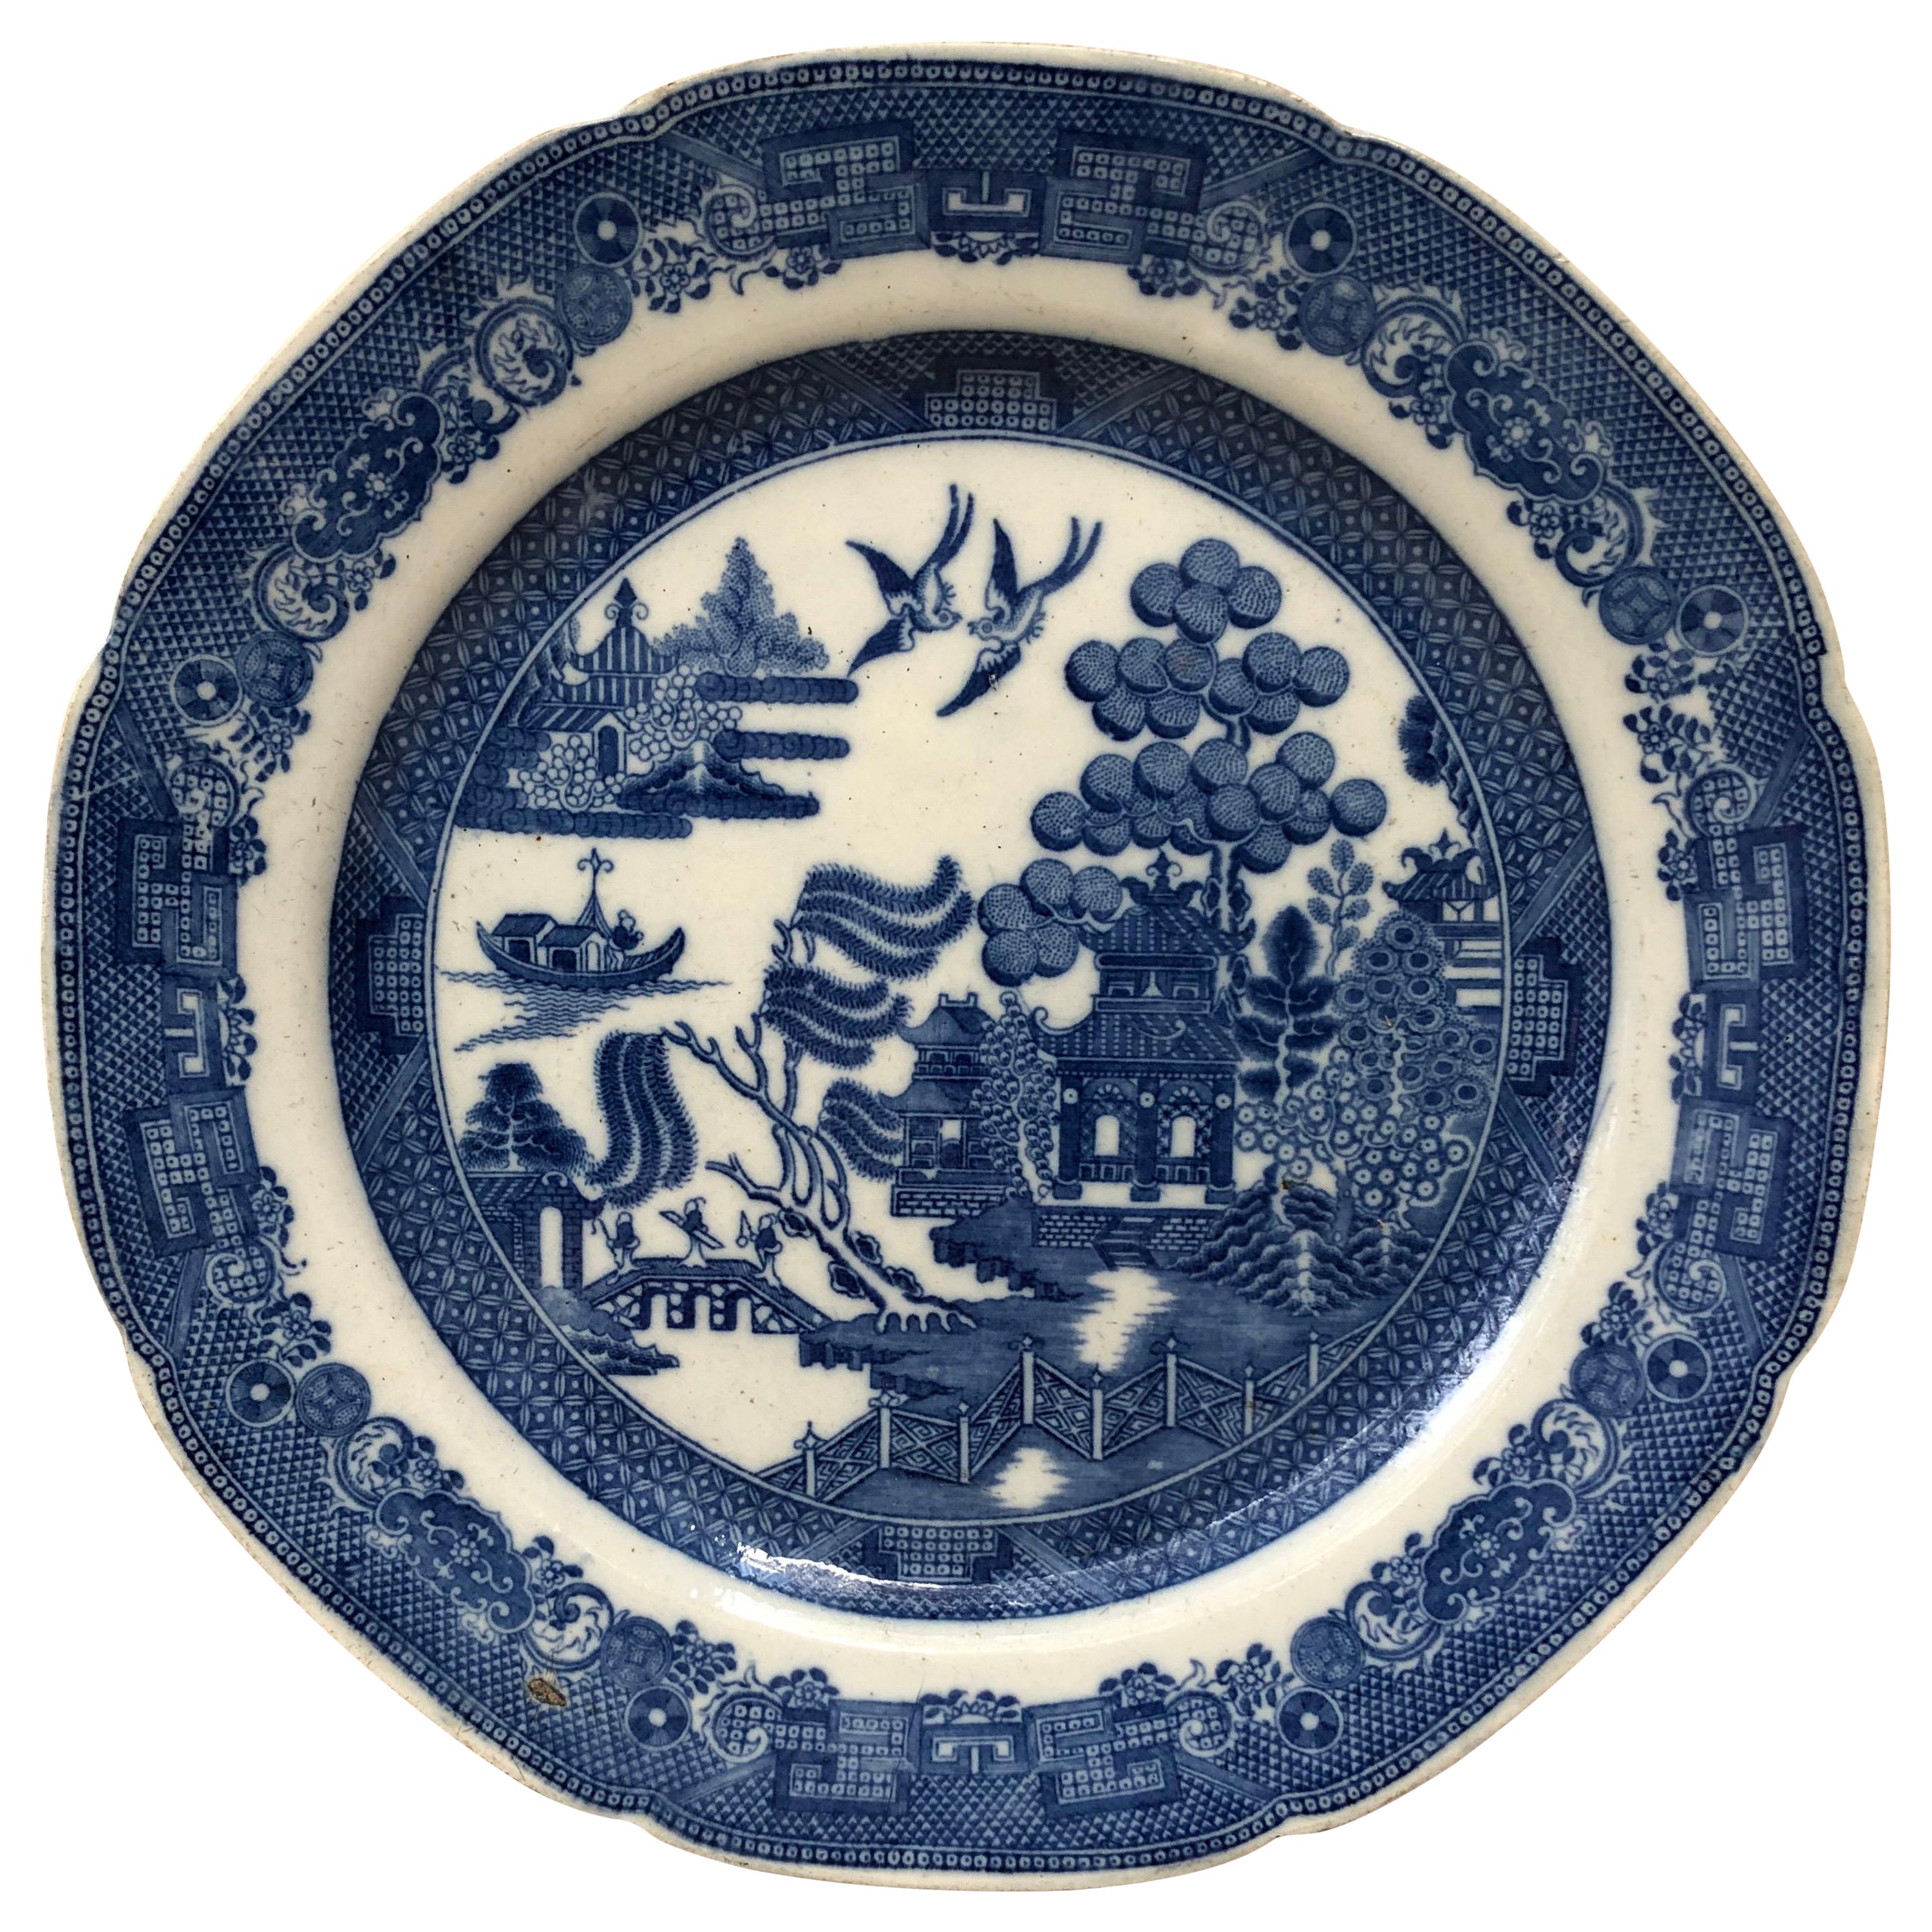 Grande assiette bleue et blanche de style Chinoiserie anglaise du 19ème siècle